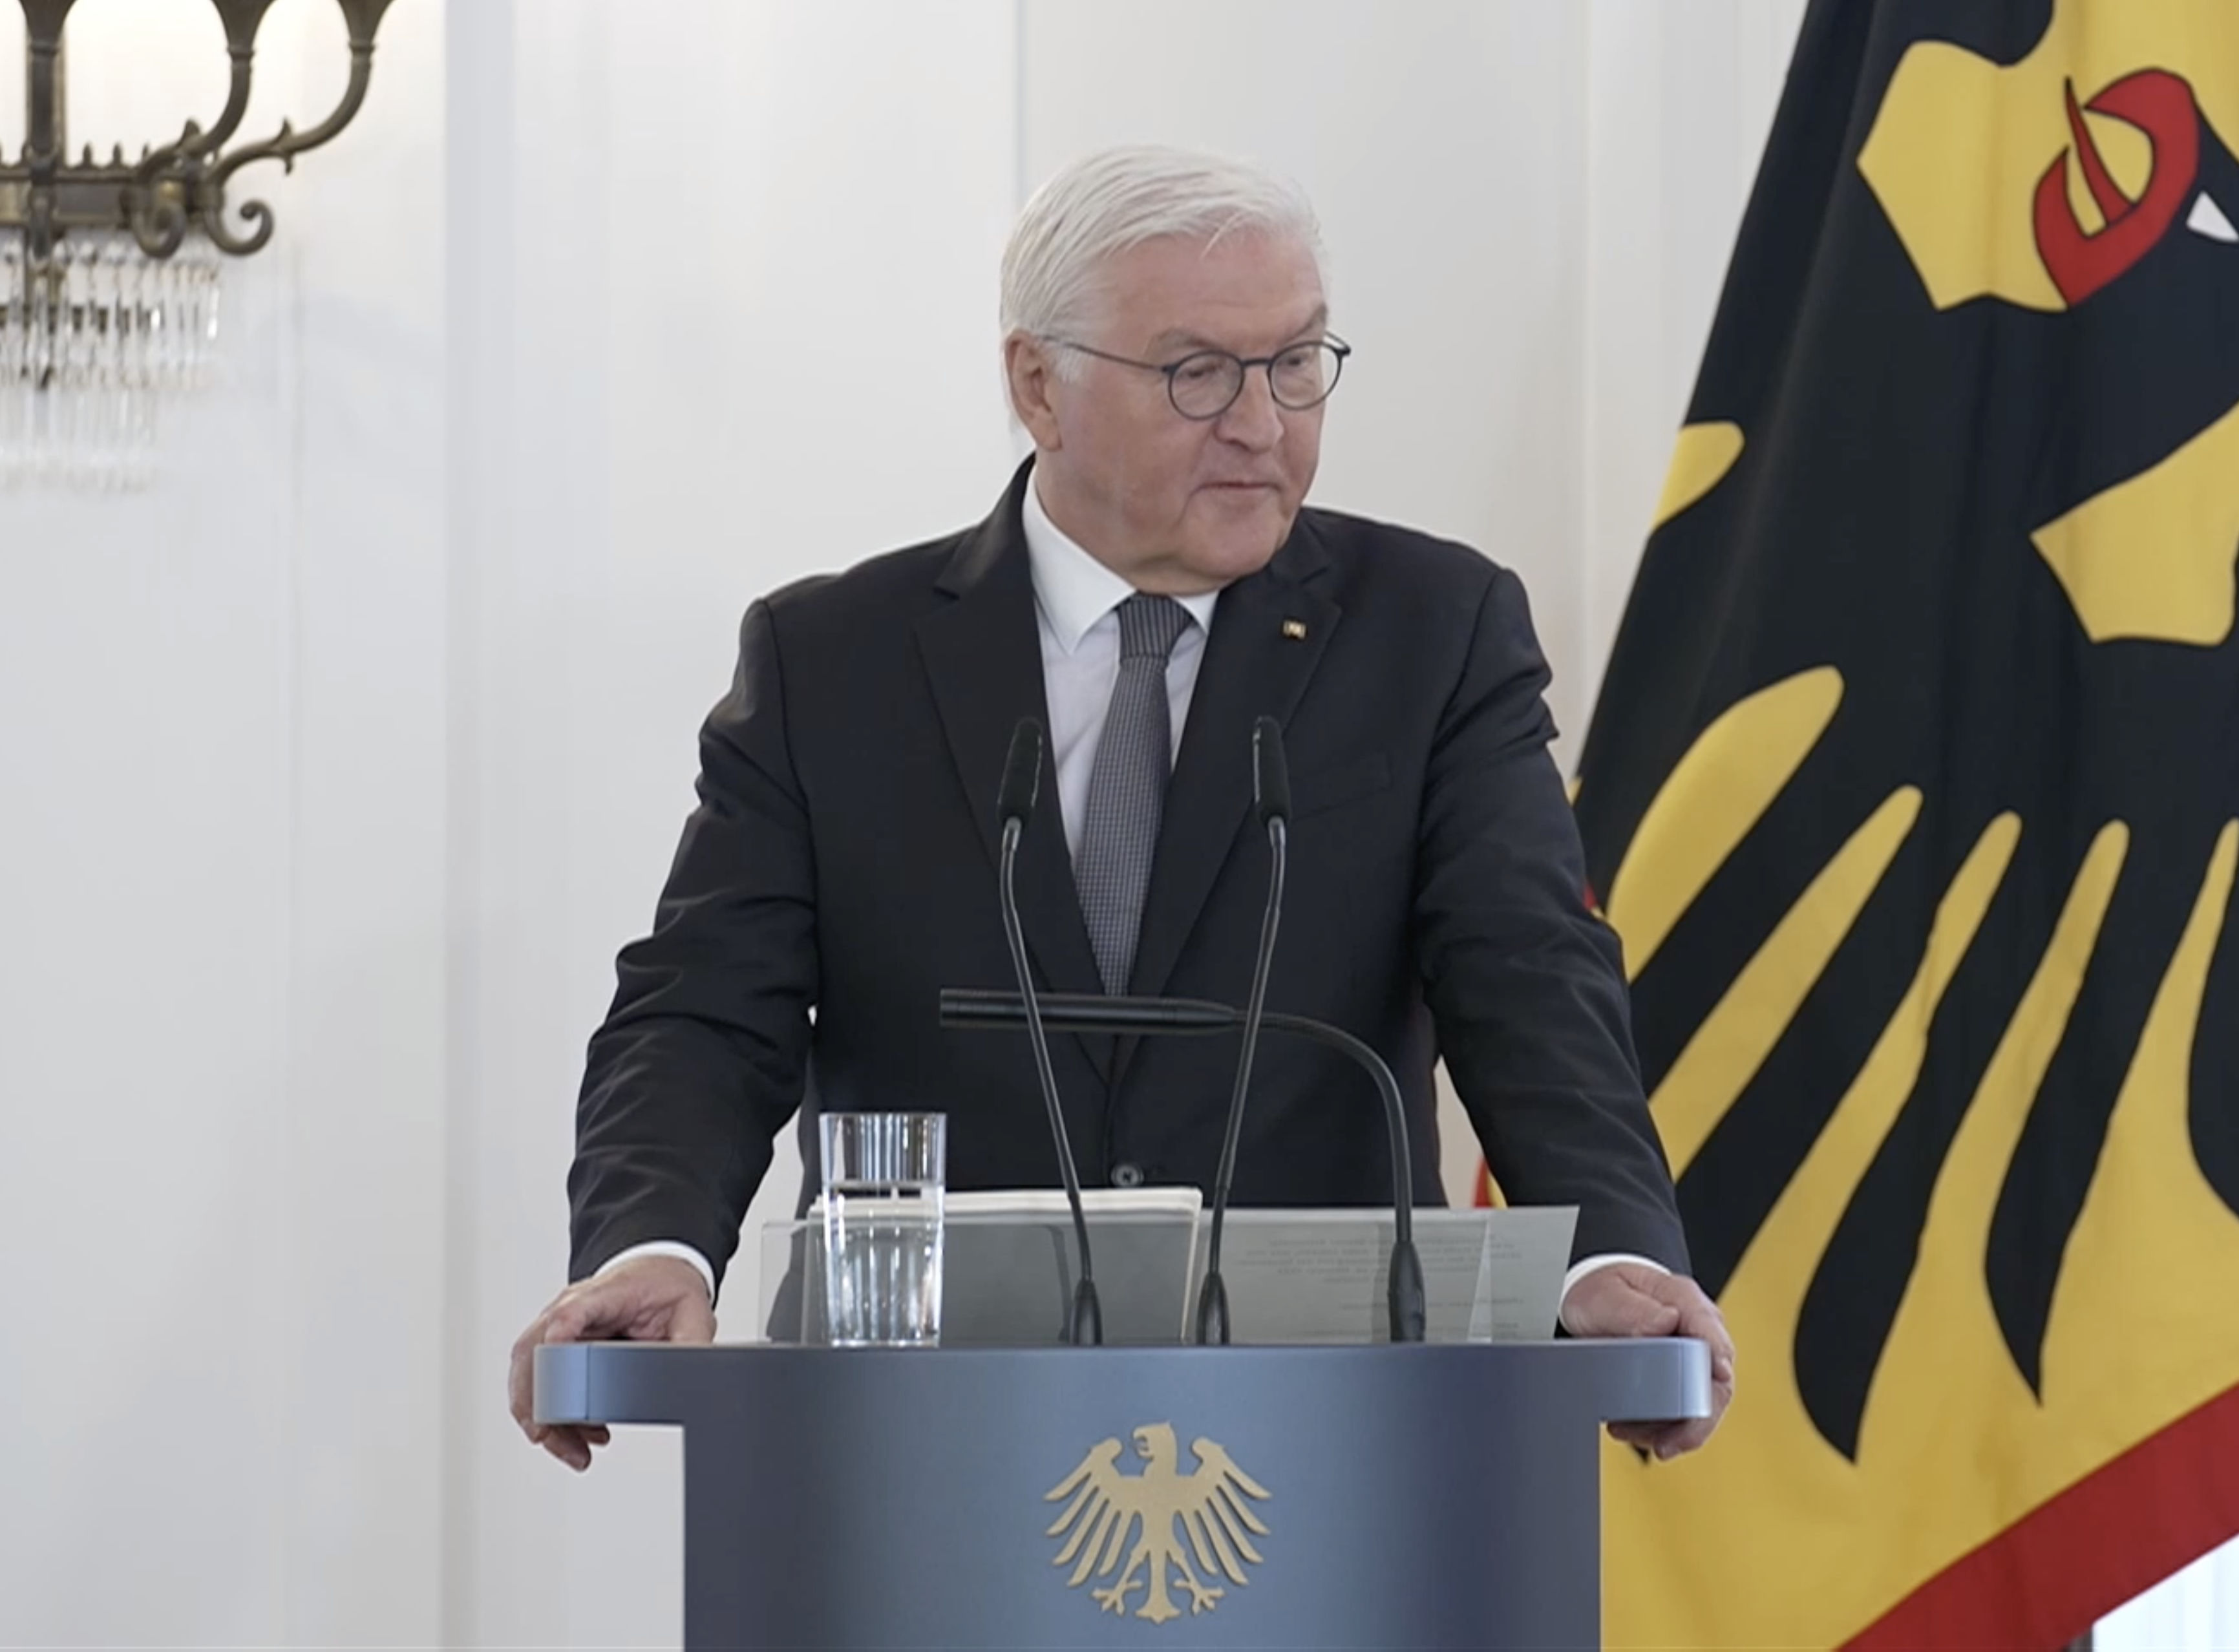 Frank Walter Steinmeier bei seiner Rede am 28. Oktober 2022. Quelle: www.Bundespraesident.